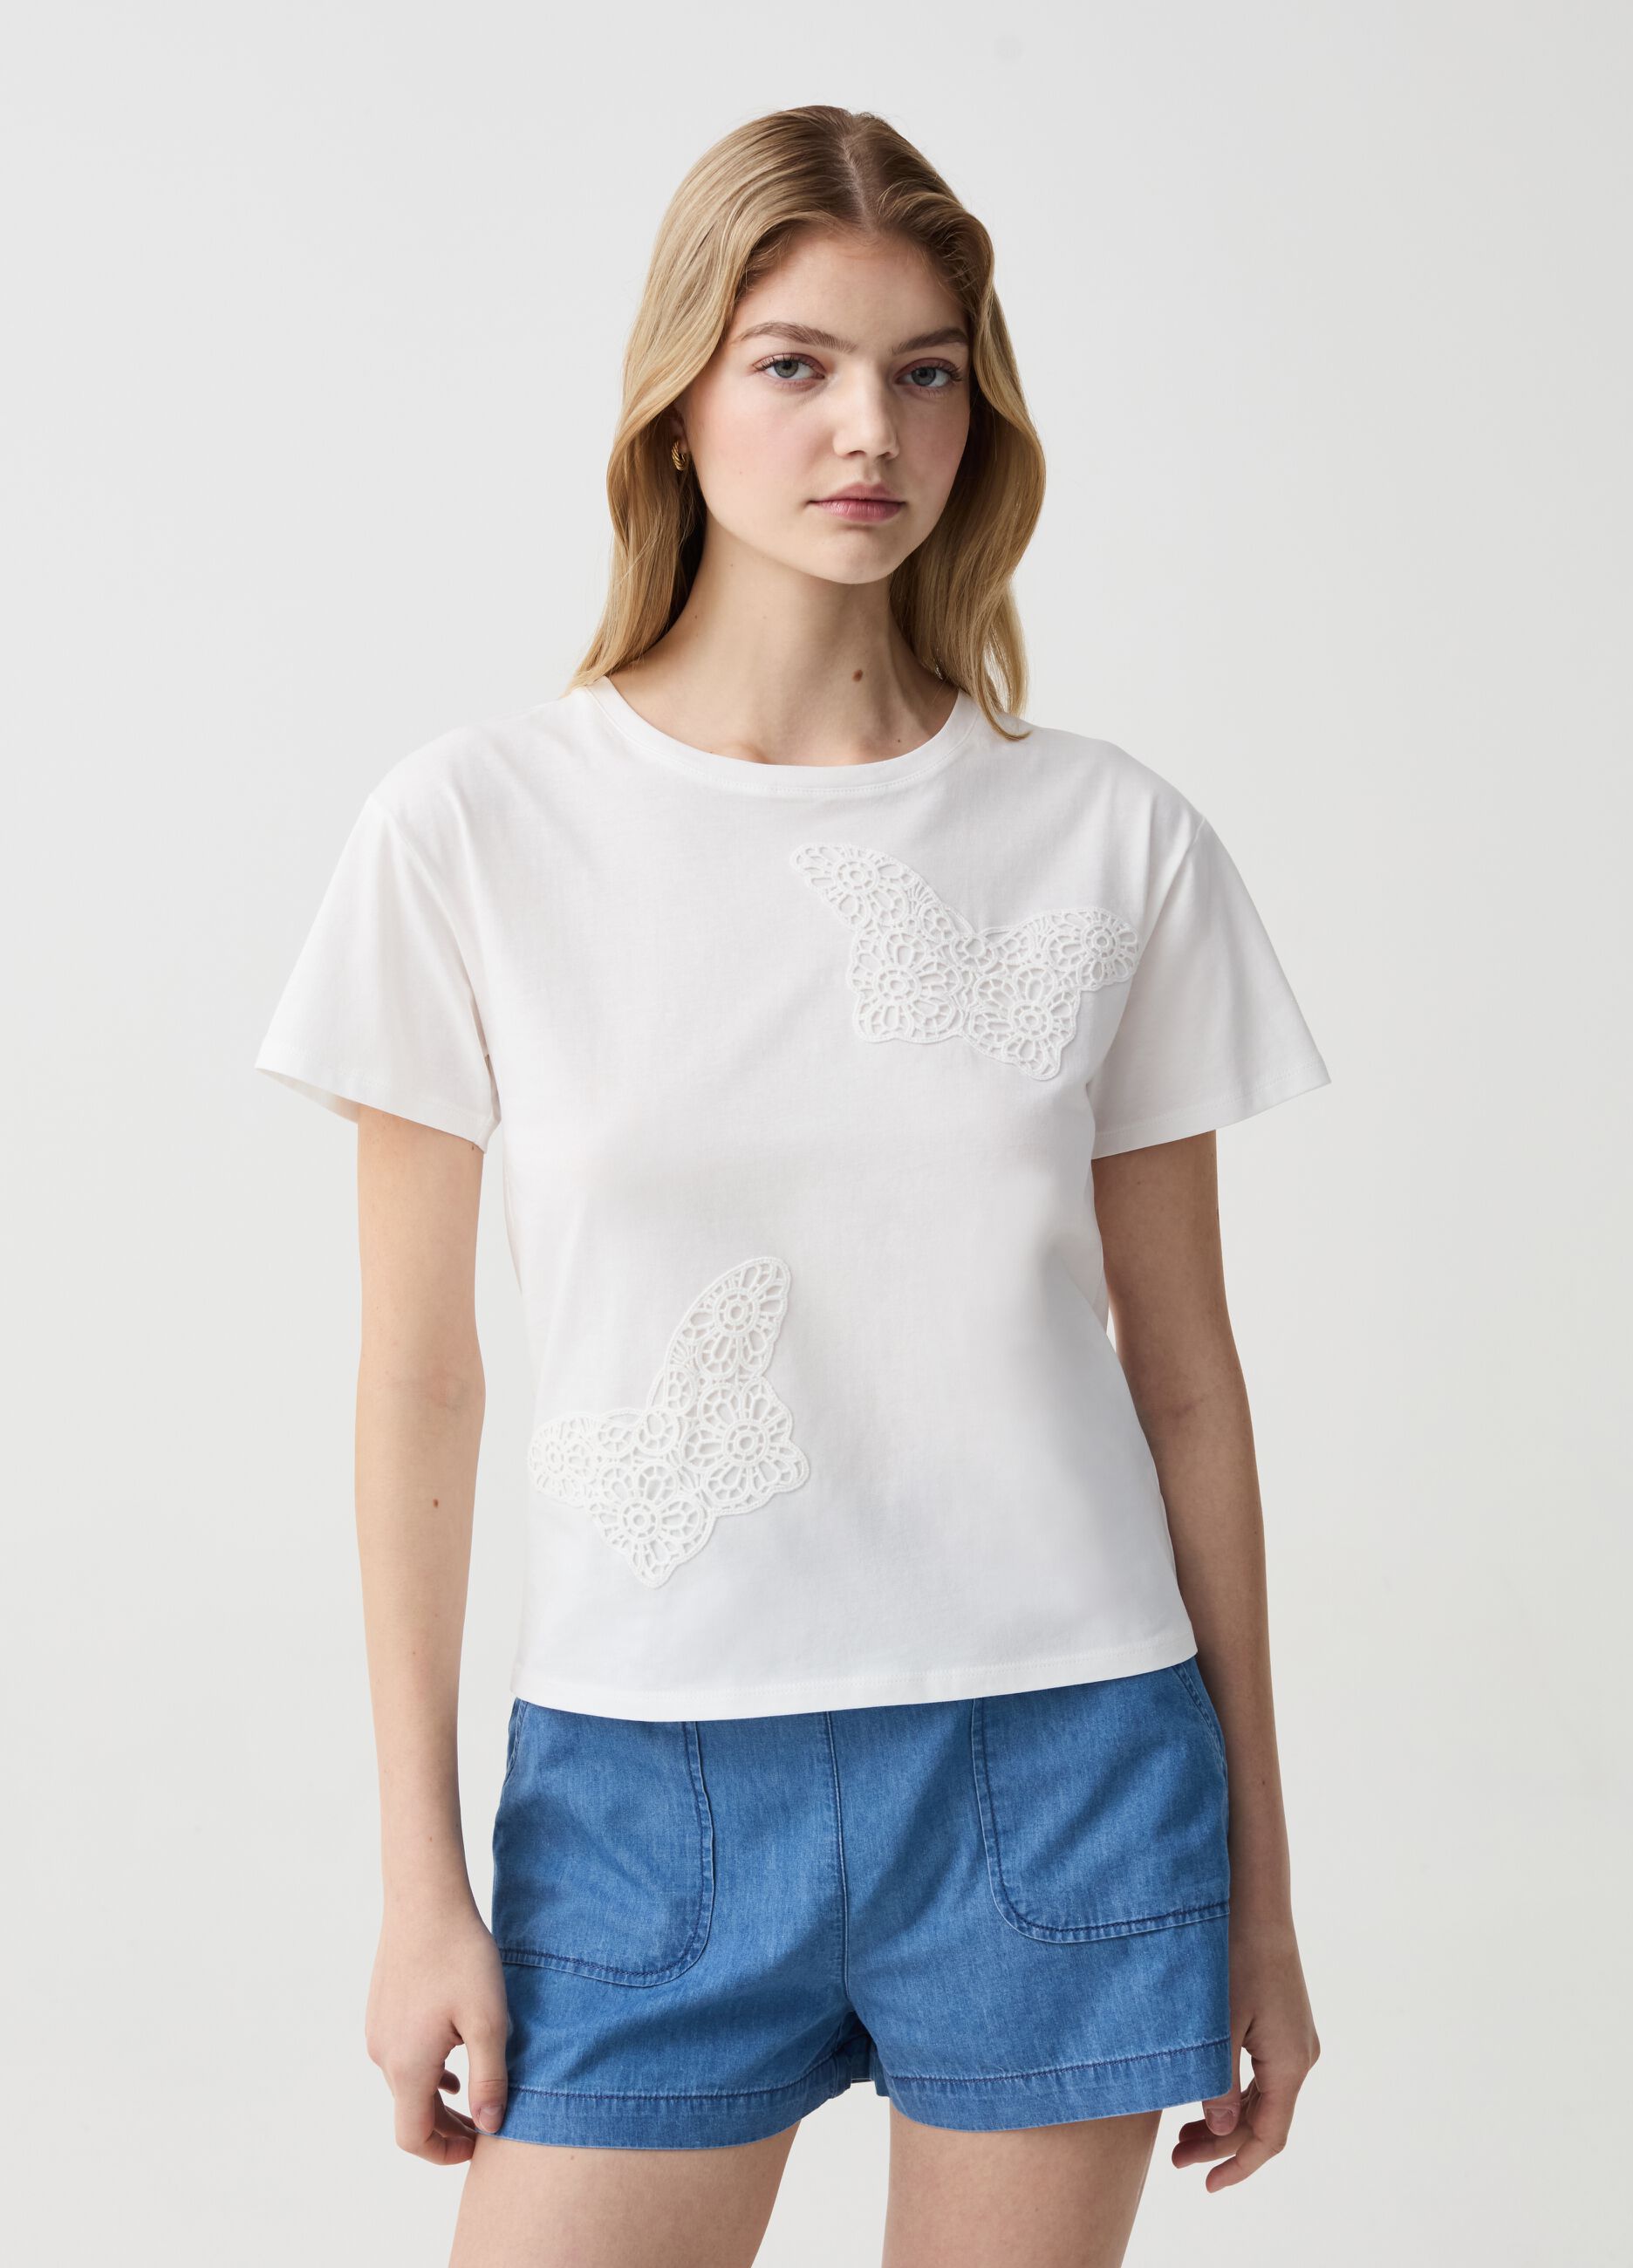 T-shirt with crochet butterflies applications